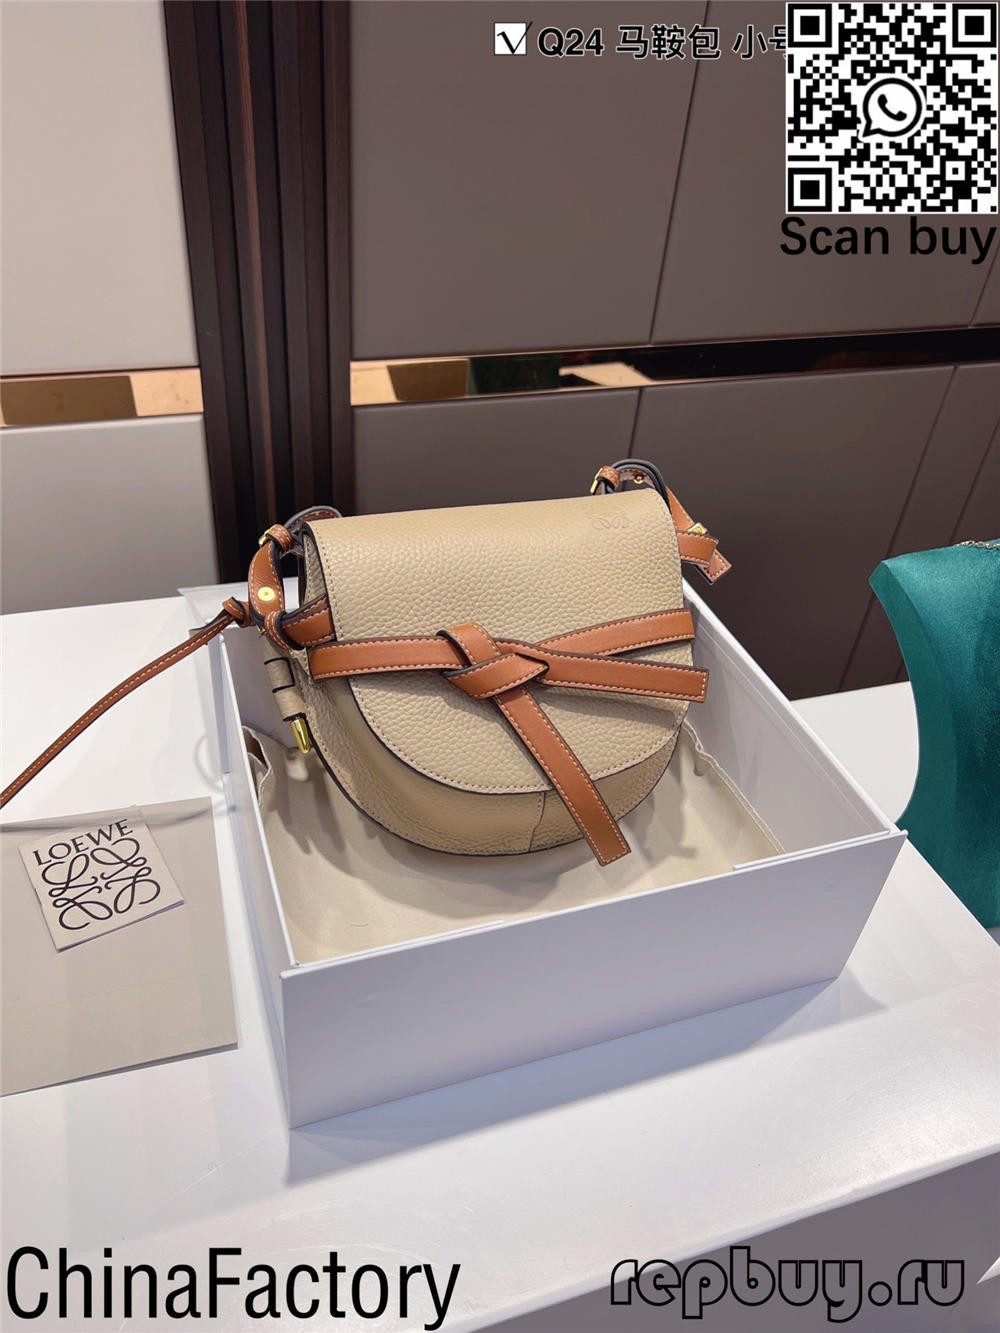 Top 5 najpopularniejszego przewodnika po replikach Loewe (aktualizacja 2022)-najlepsza jakość fałszywe torebki Louis Vuitton sklep internetowy, torebka projektanta replik.